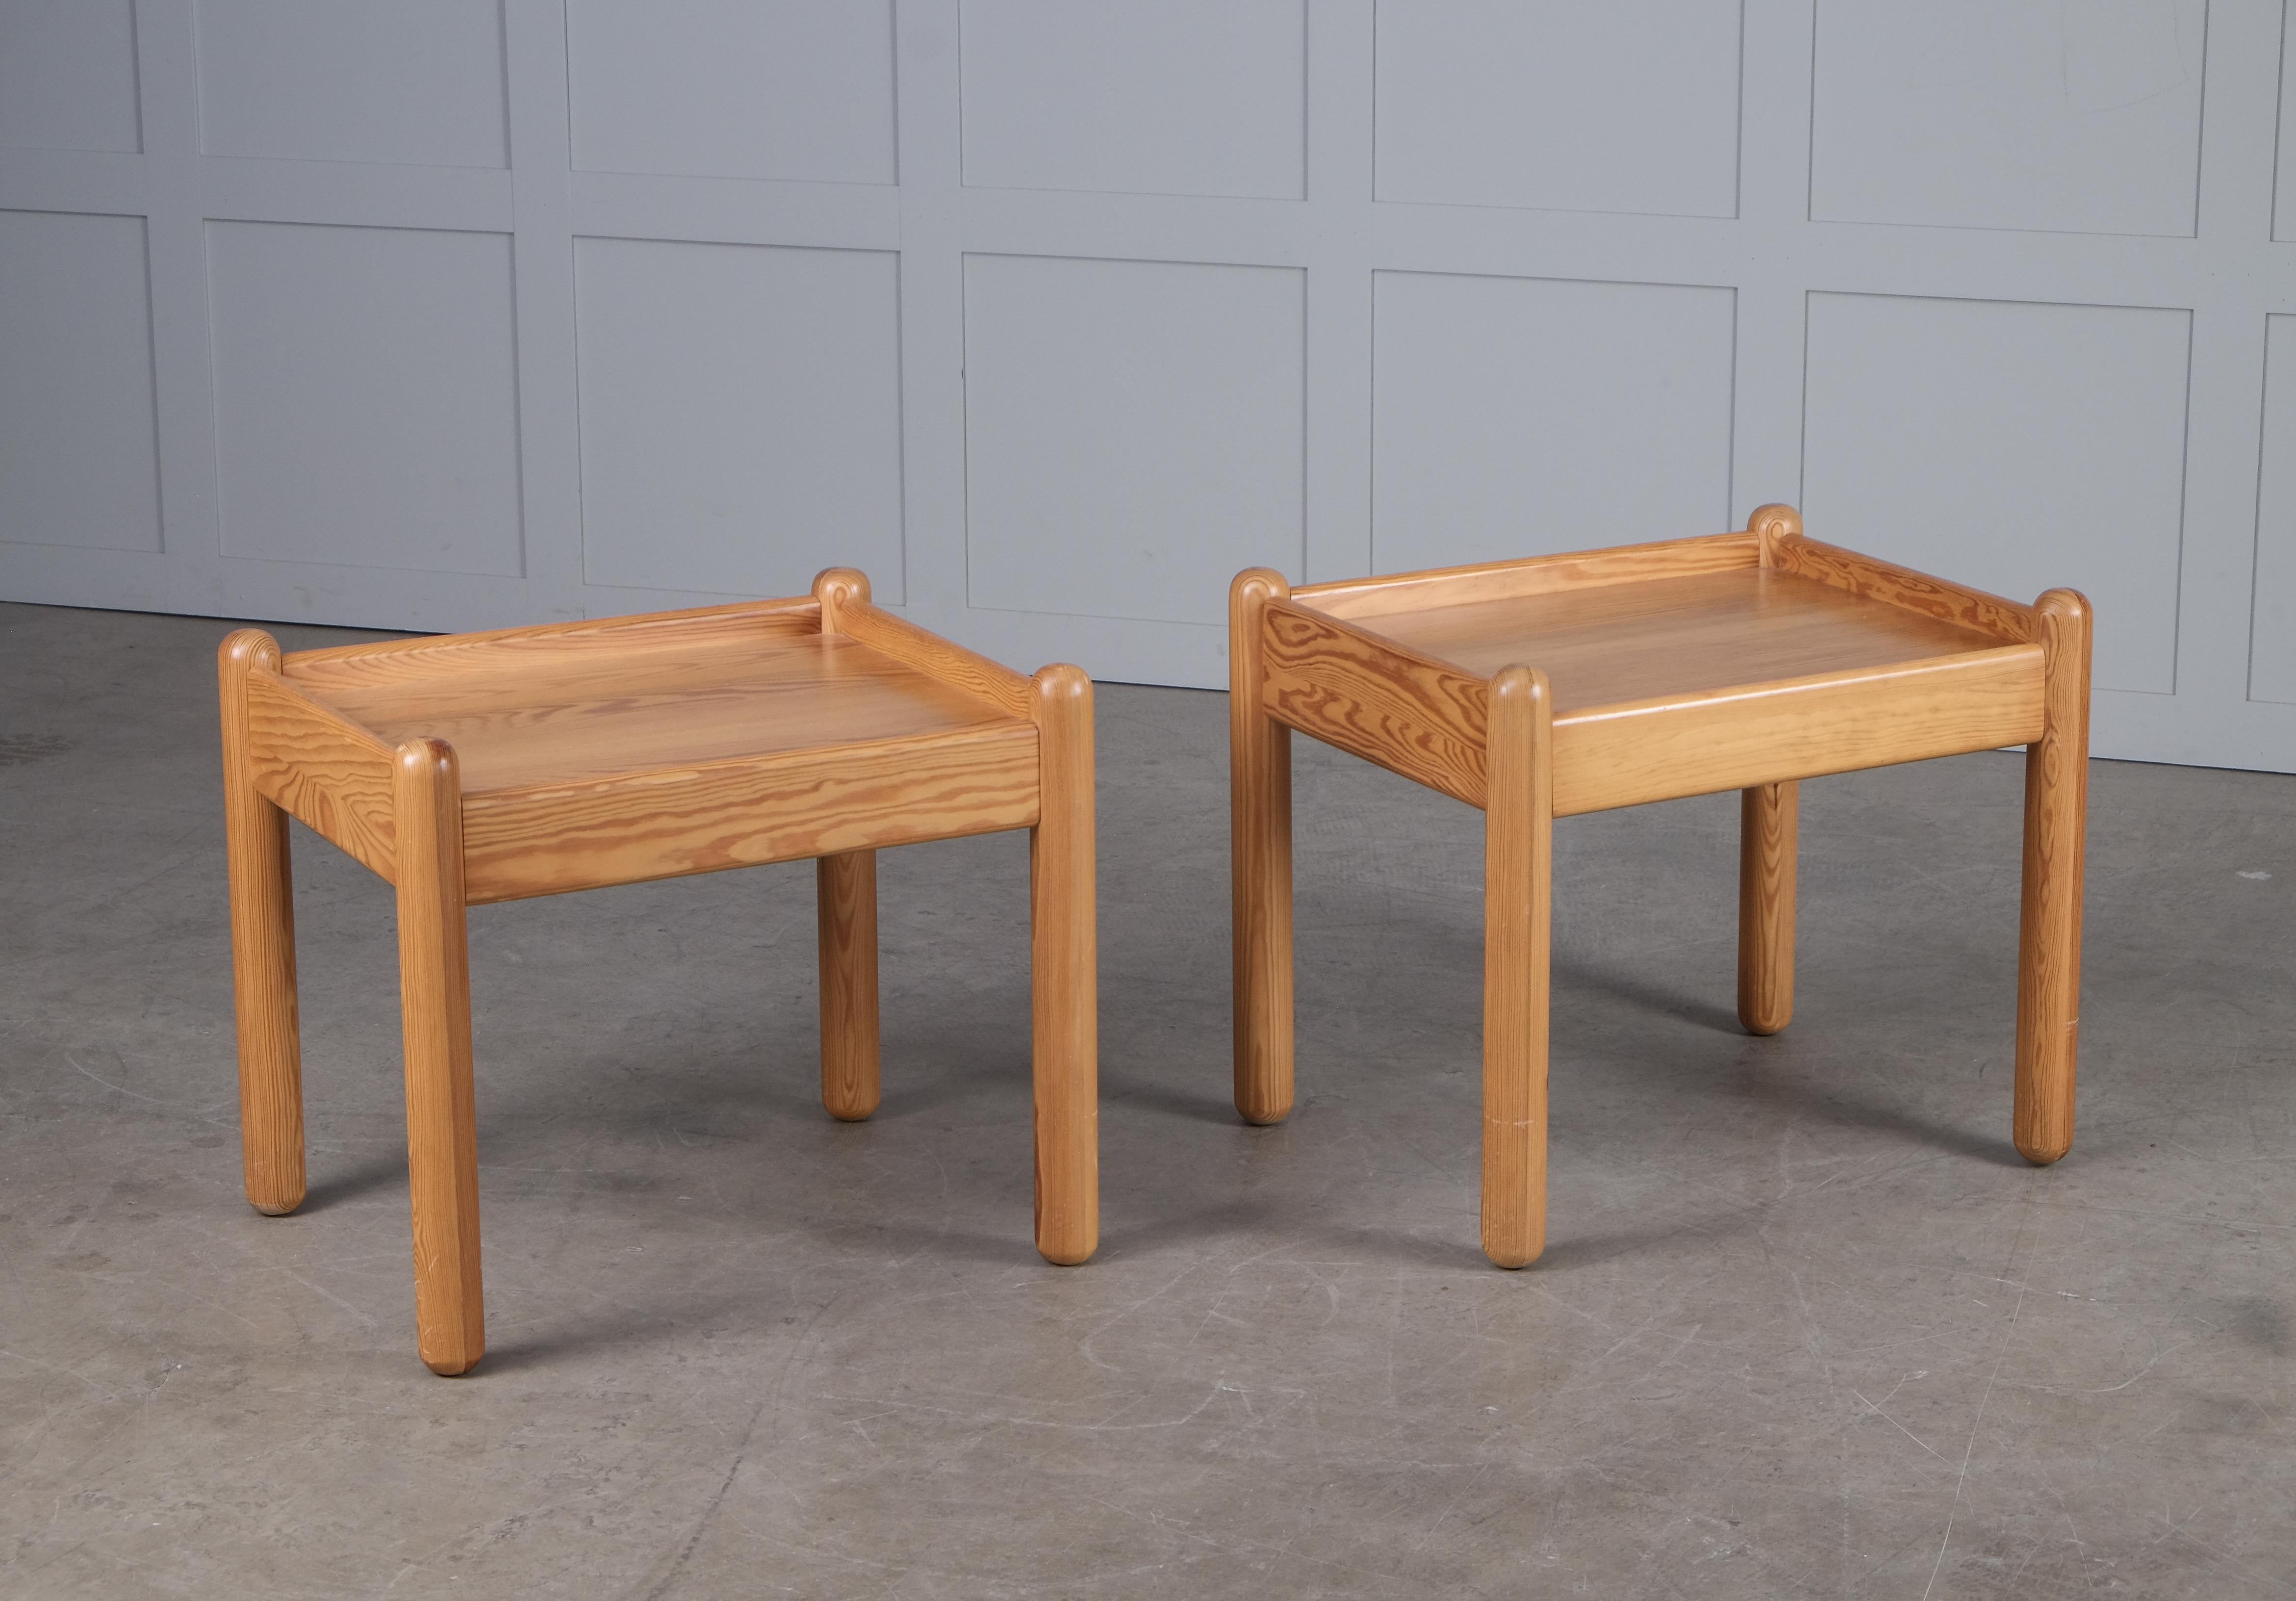 Paire de tables de chevet en pin, fabriquées au Danemark, années 1970.
Bon état d'origine avec de petits signes d'utilisation.

4 tables disponibles, le prix indiqué est celui d'une paire.